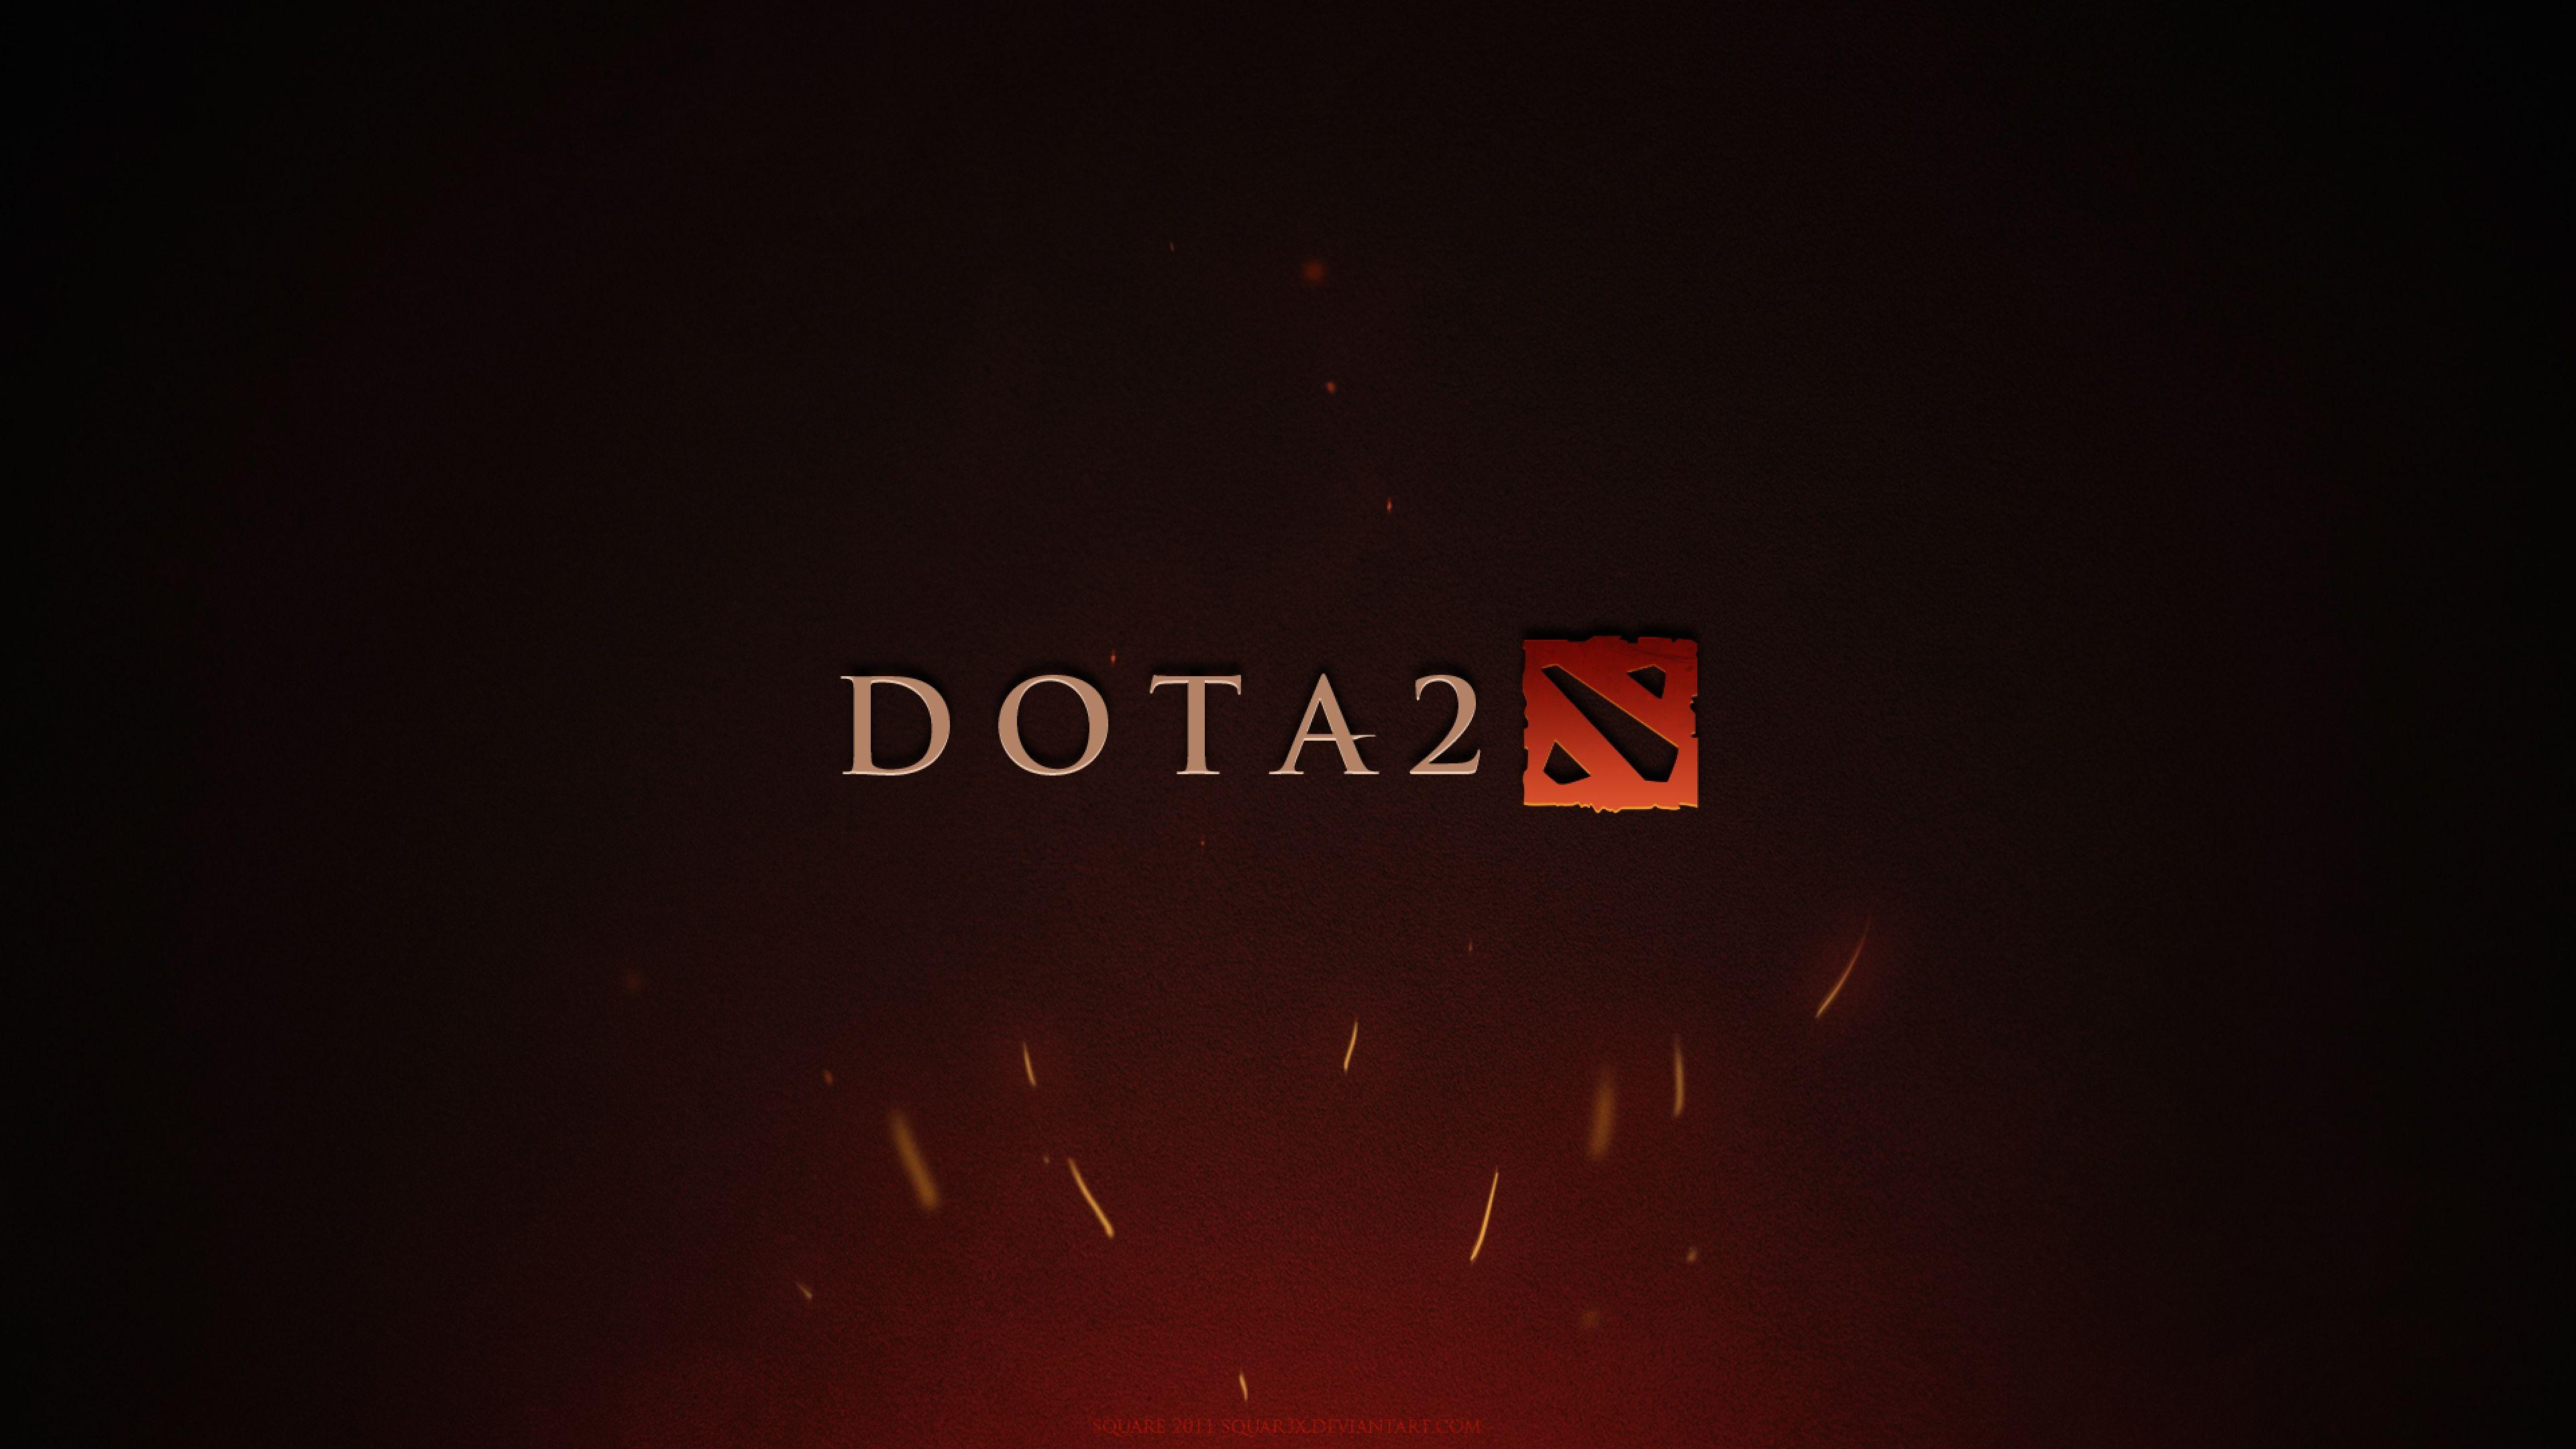 Dota 2 Logo - Dota 2 Game Logo, HD Games, 4k Wallpaper, Image, Background